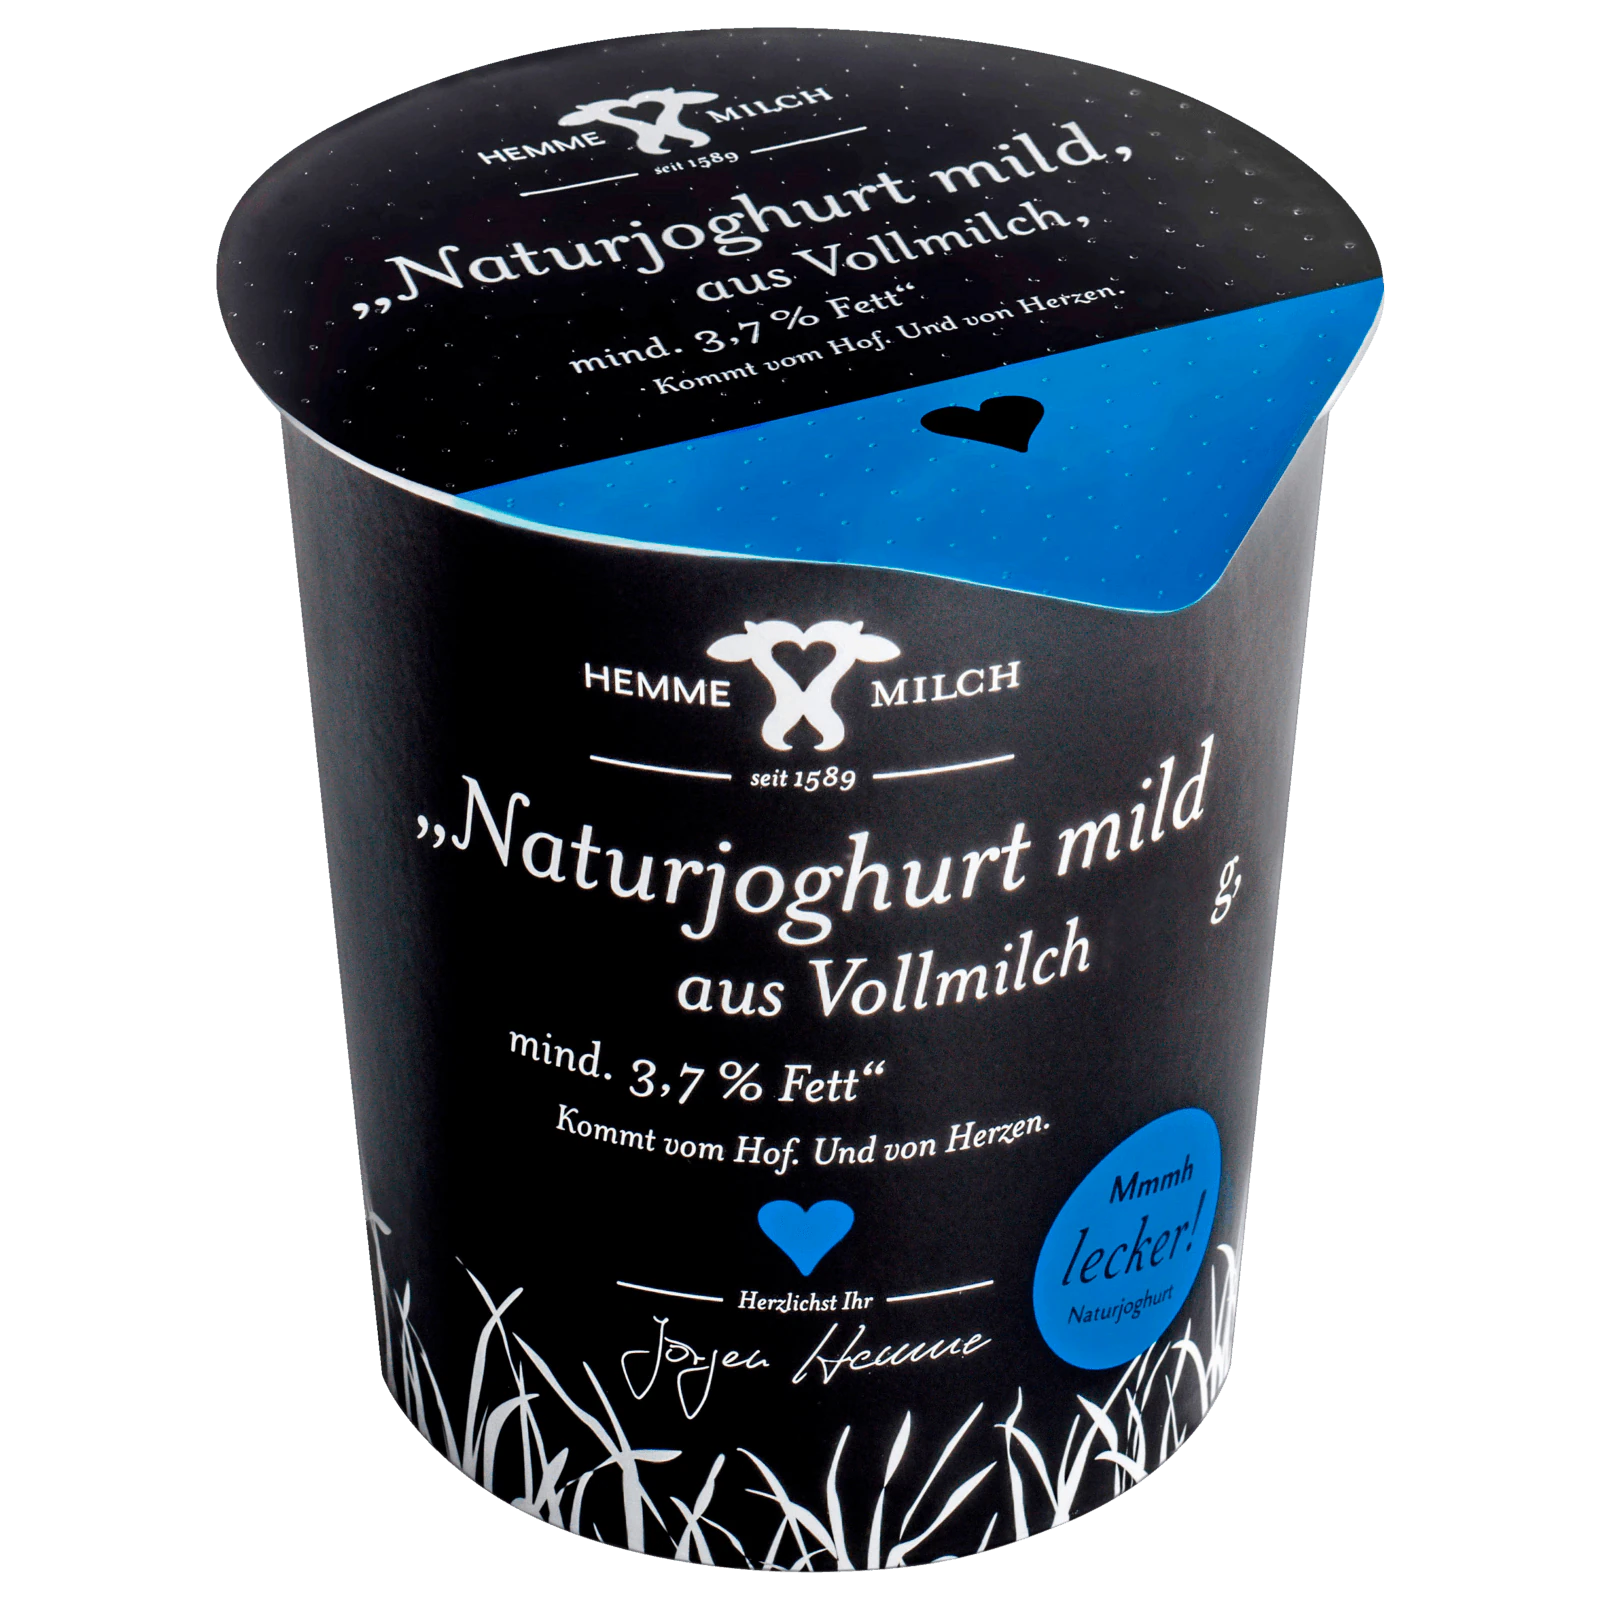 Hemme Milch Naturjoghurt mild 3,7% 400g  für 1.39 EUR